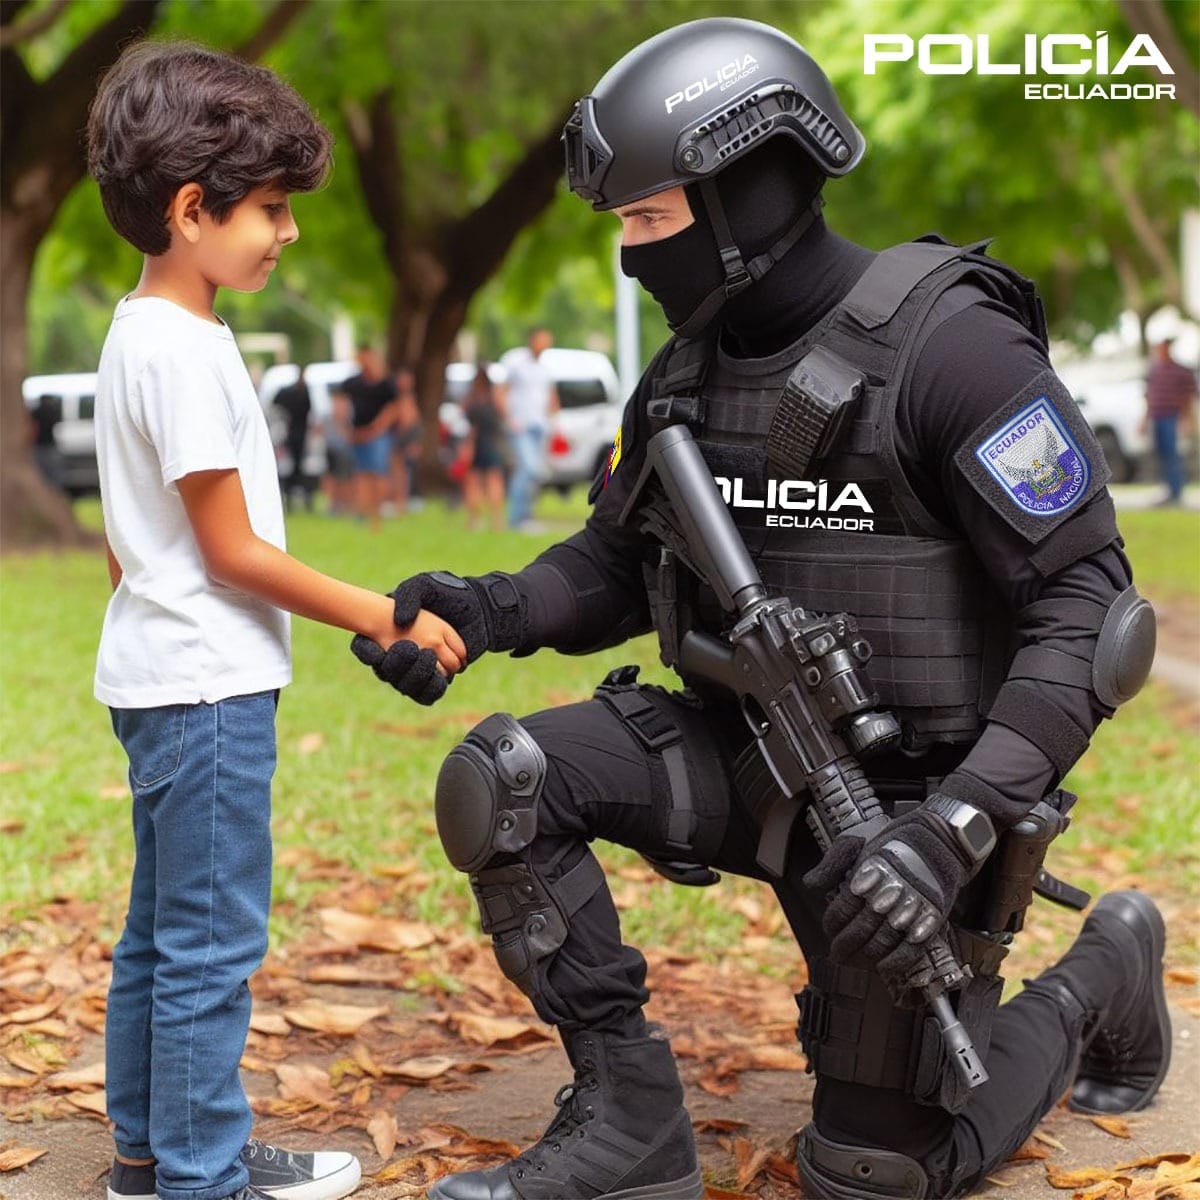 👮‍♂Al elegir ser policía, adquieres un #CompromisoInquebrantable por vocación de #ServirYProteger. 

#BuenMiércoles
#PolicíaEcuador